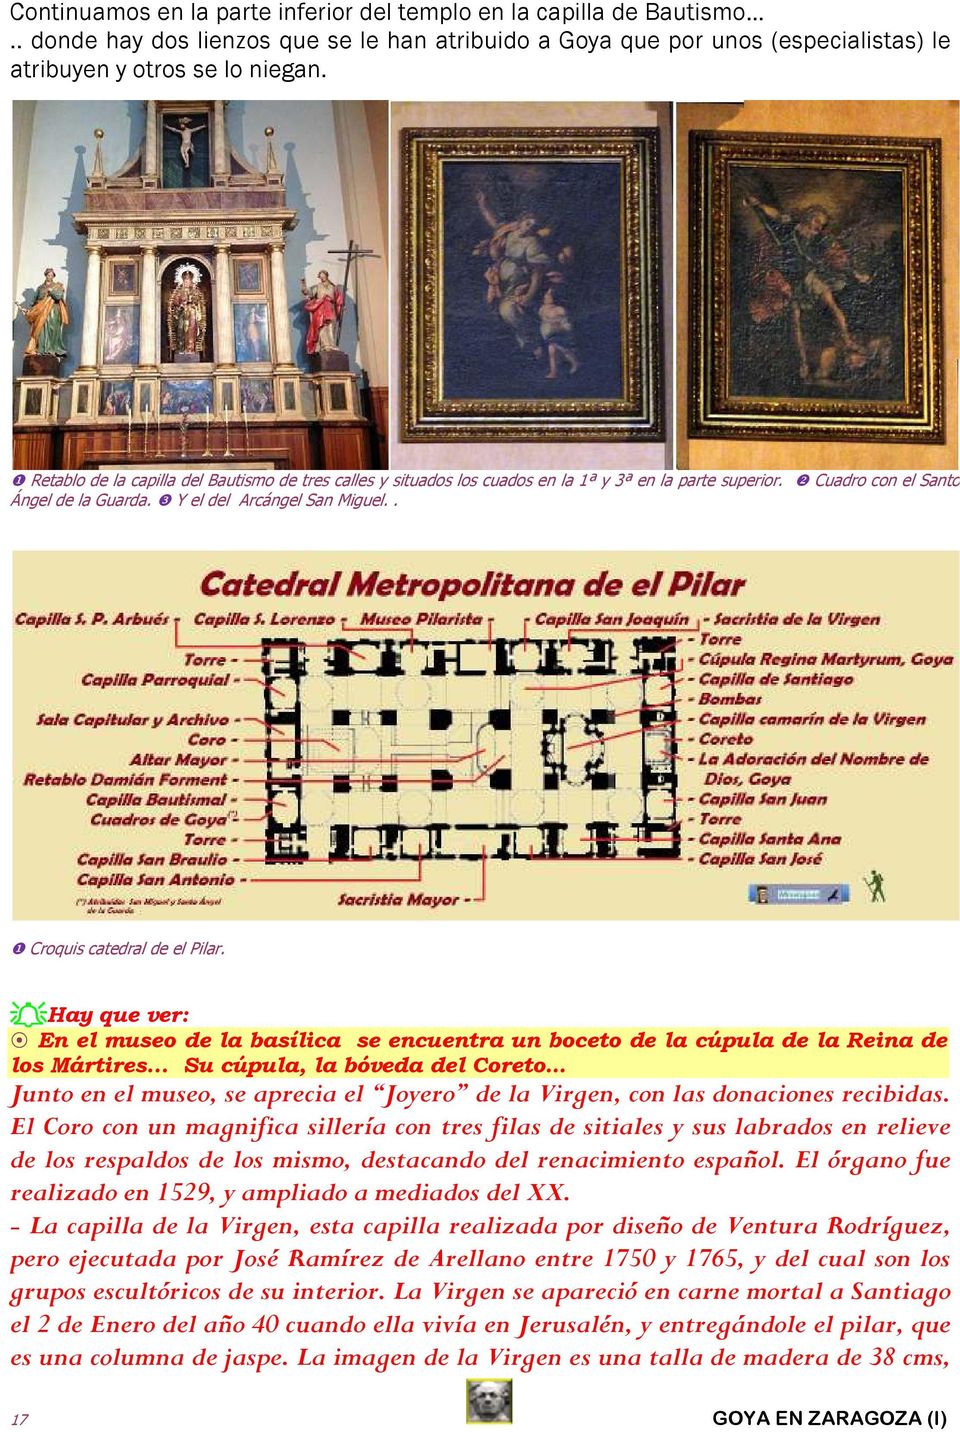 . ❶ Croquis catedral de el Pilar. Hay que ver: En el museo de la basílica se encuentra un boceto de la cúpula de la Reina de los Mártires.